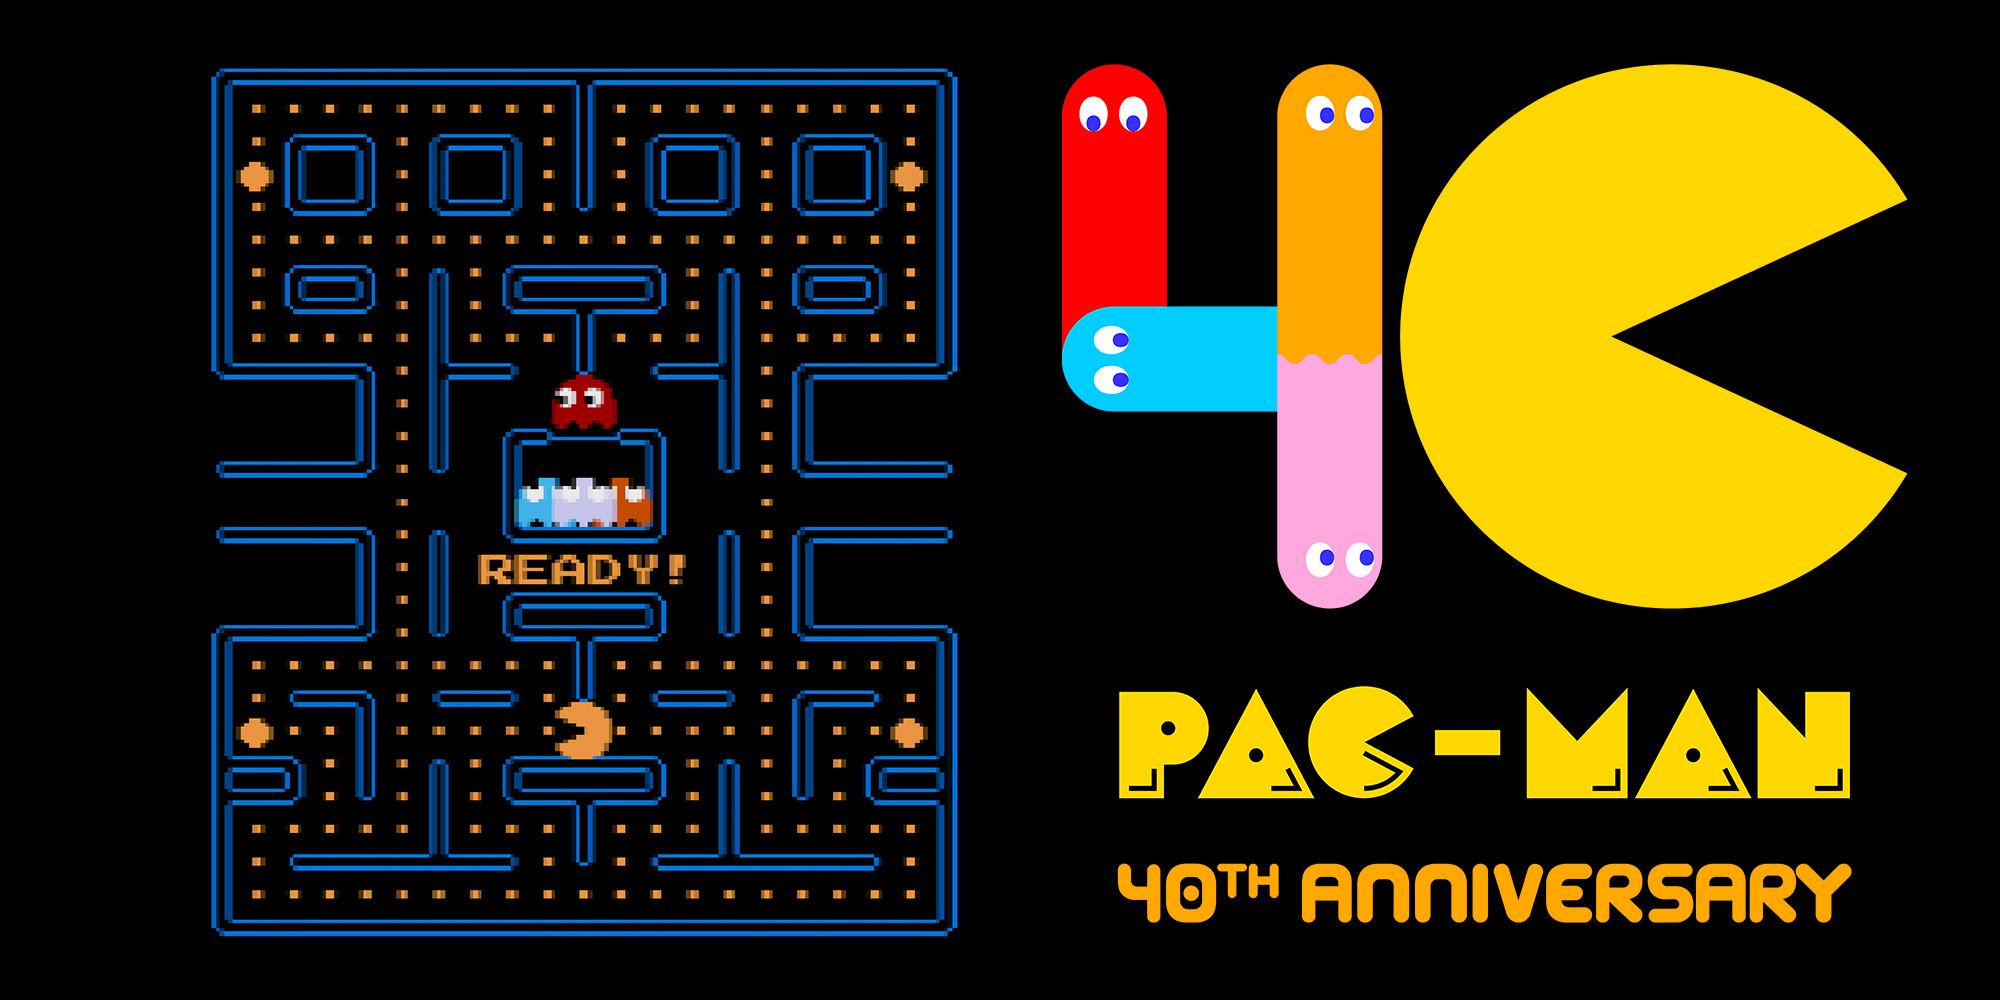 Pac-Man cumple 40 años, ¡felicidades Bandai Namco! El futuro del comecocos